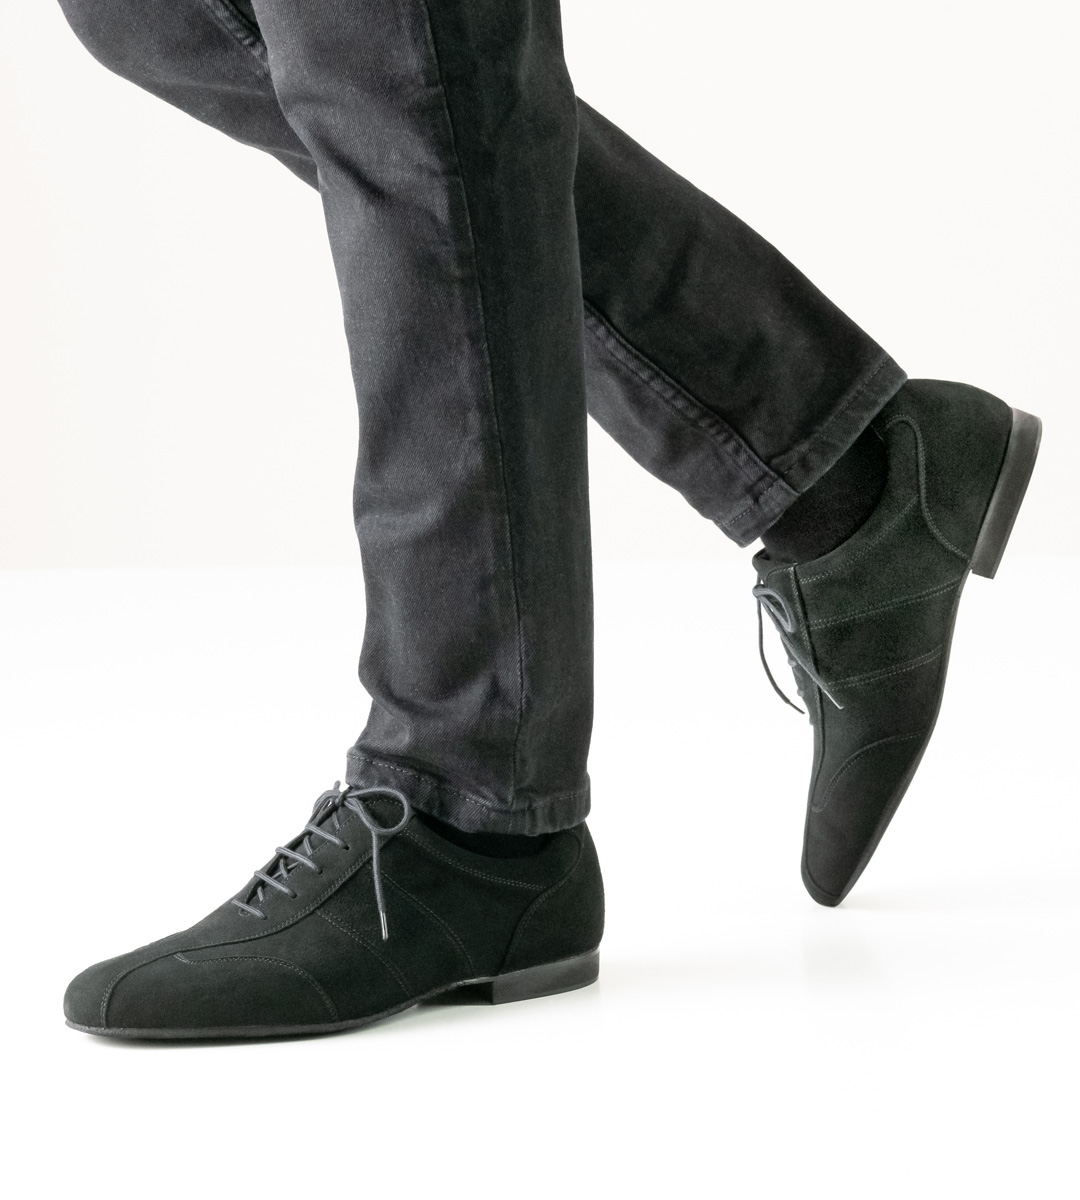 Sneaker Men's Dance Shoe by Werner Kern in black